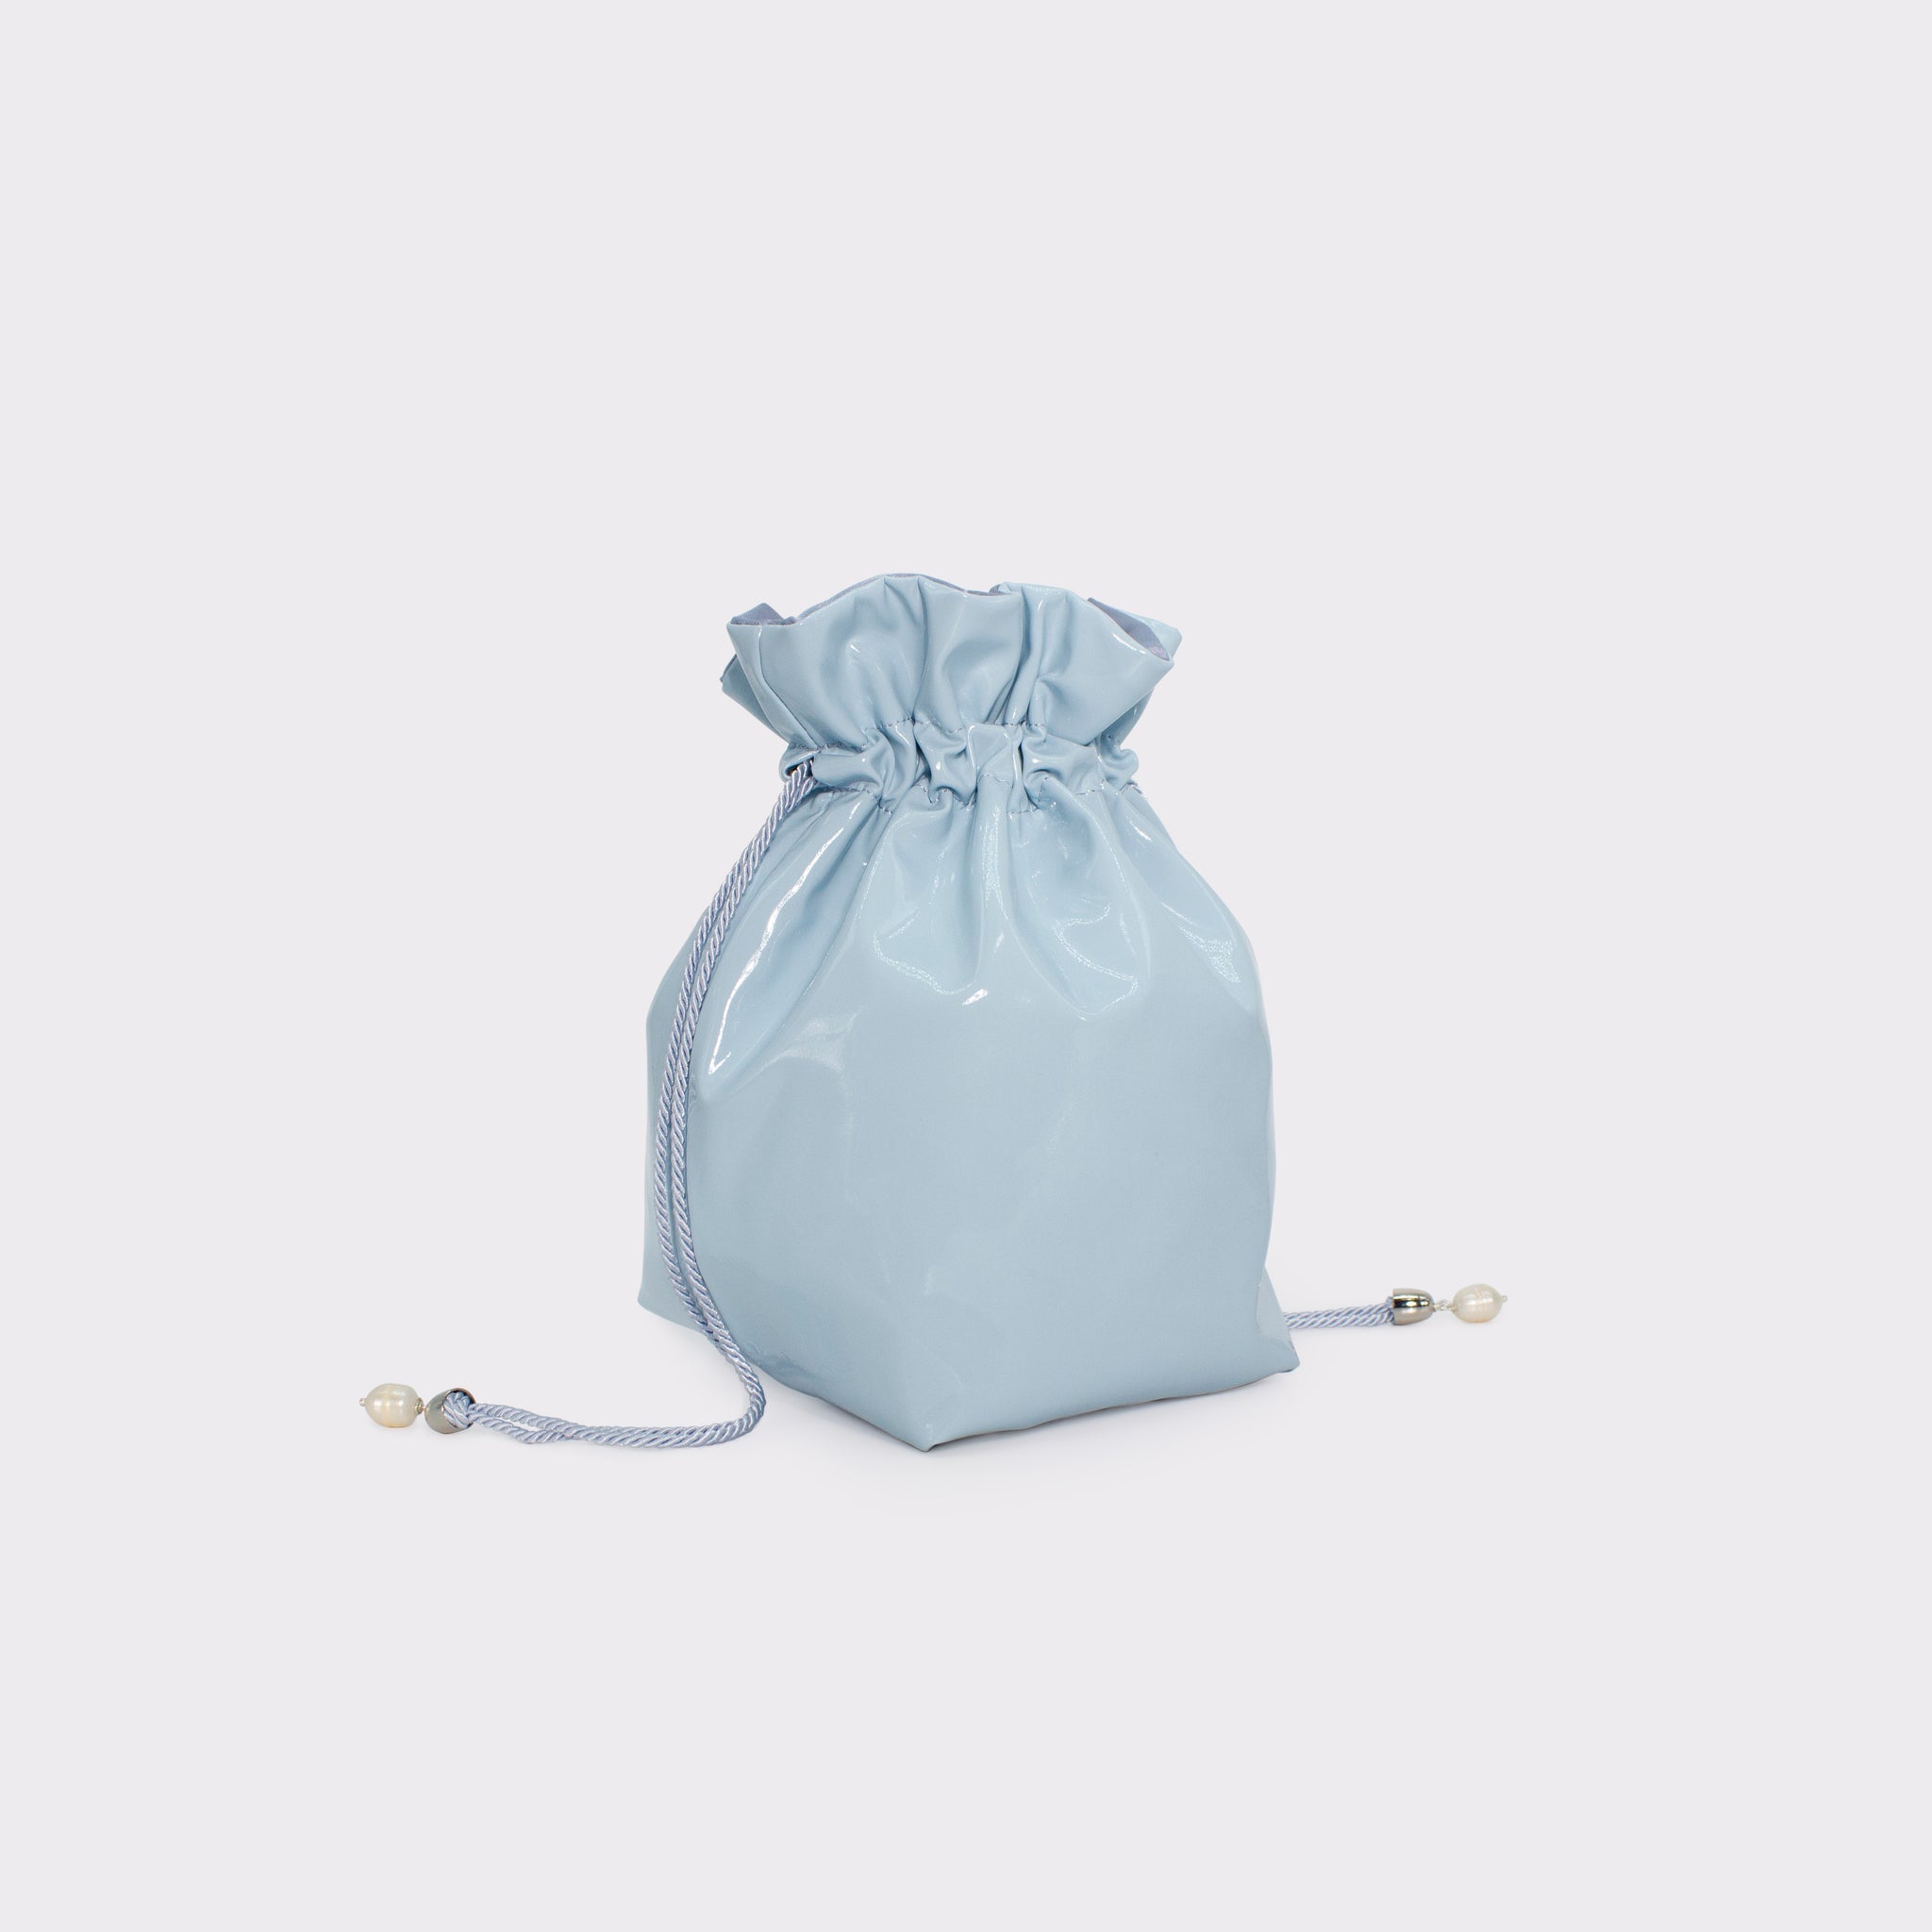 La Glossy bucket bag in colorazione starlight blue